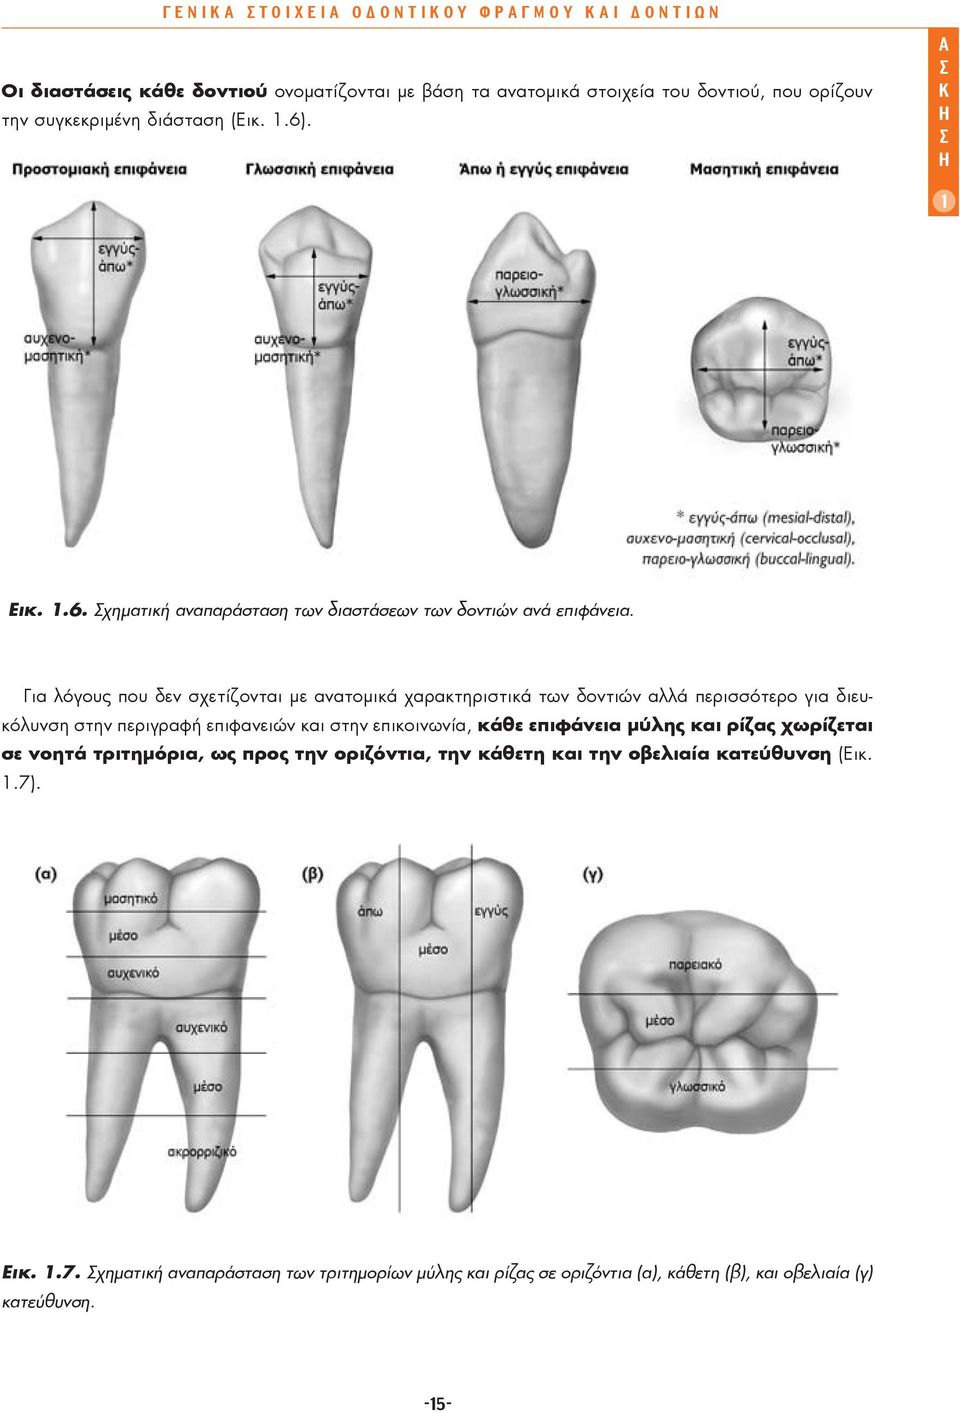 Για λόγους που δεν σχετίζονται με ανατομικά χαρακτηριστικά των δοντιών αλλά περισσότερο για διευκόλυνση στην περιγραφή επιφανειών και στην επικοινωνία, κάθε